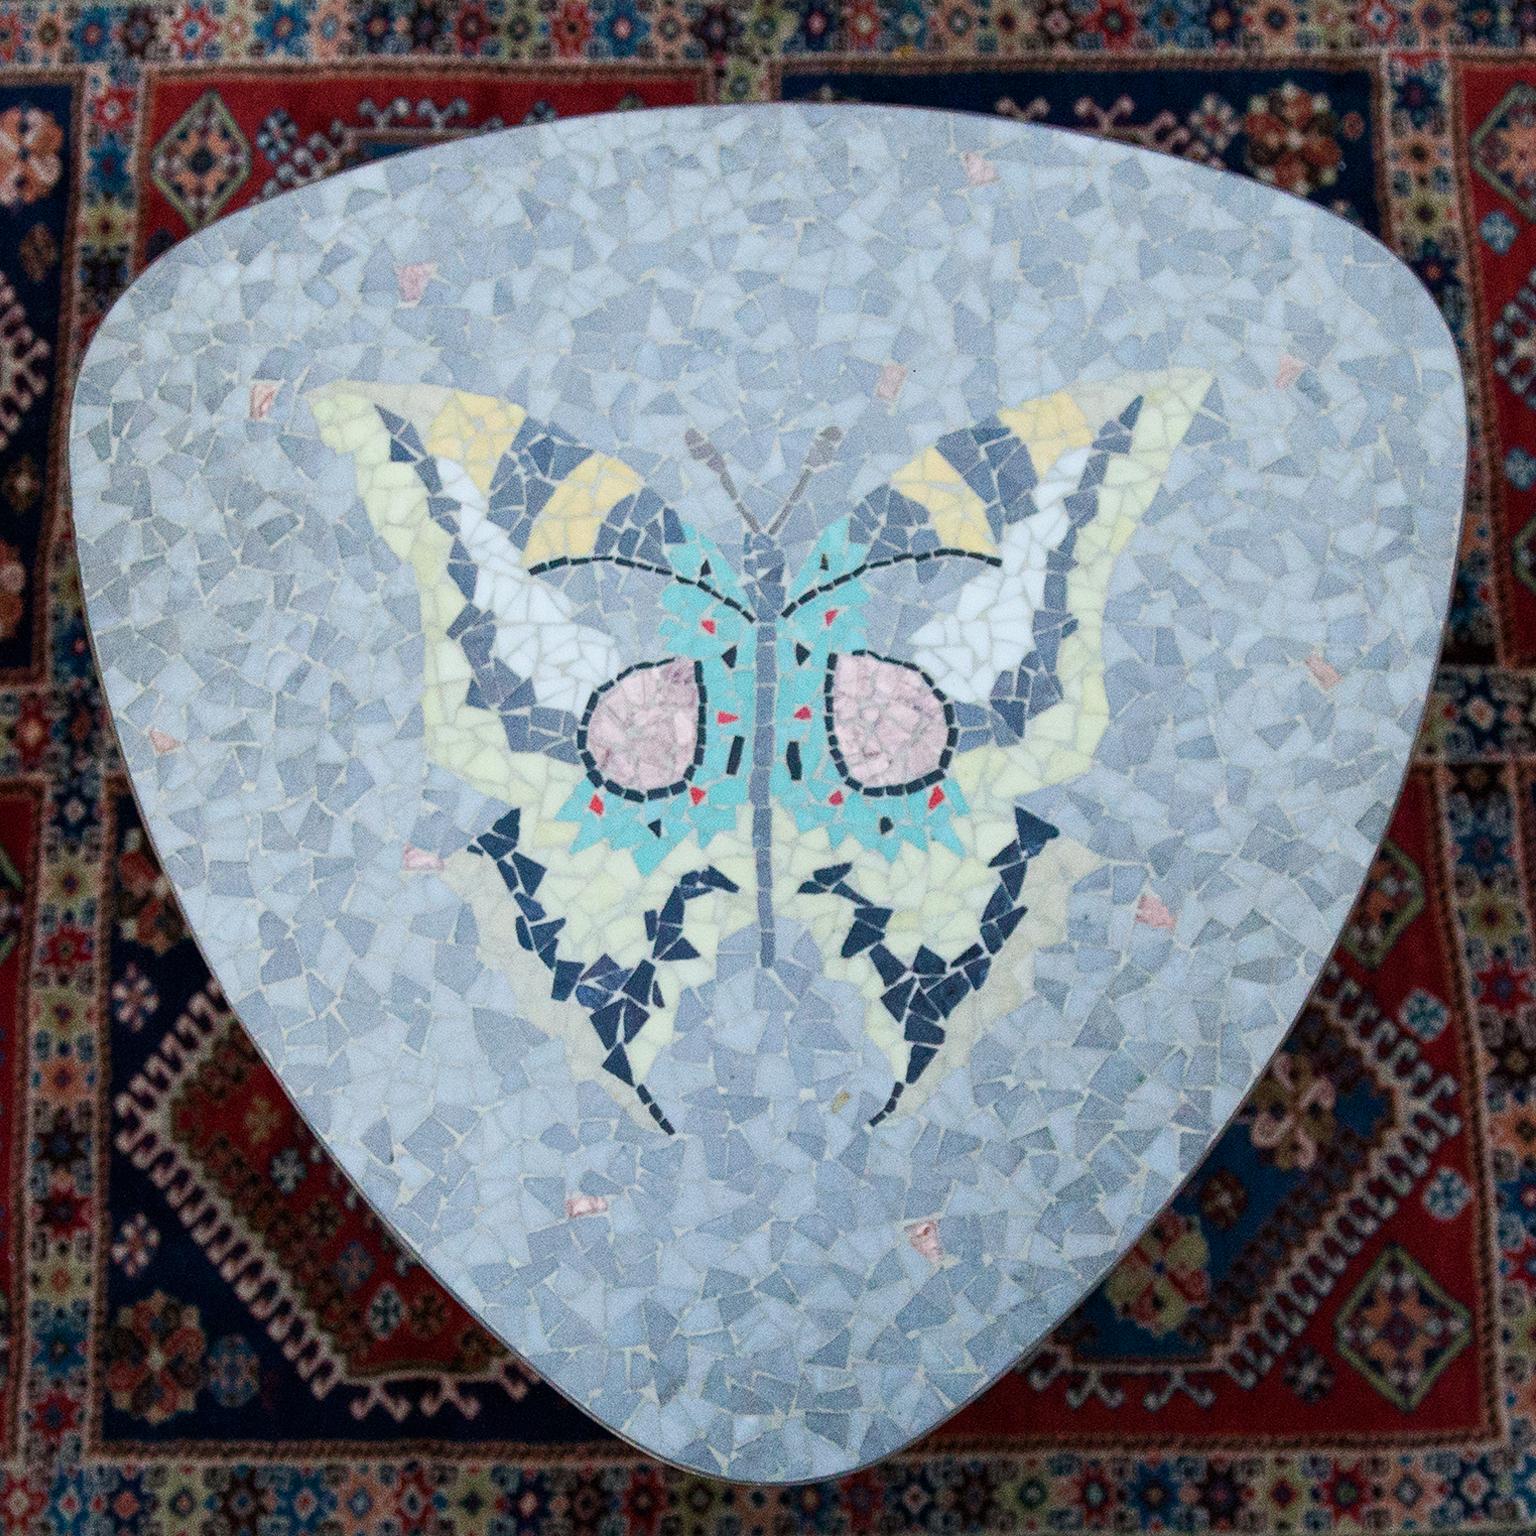 Schöne italienische Mosaiktisch mit einem bunten schönen Schmetterling in Glasfliesen in auf einem Dreieck oben und mit massiven Messingfüßen entworfen.
 